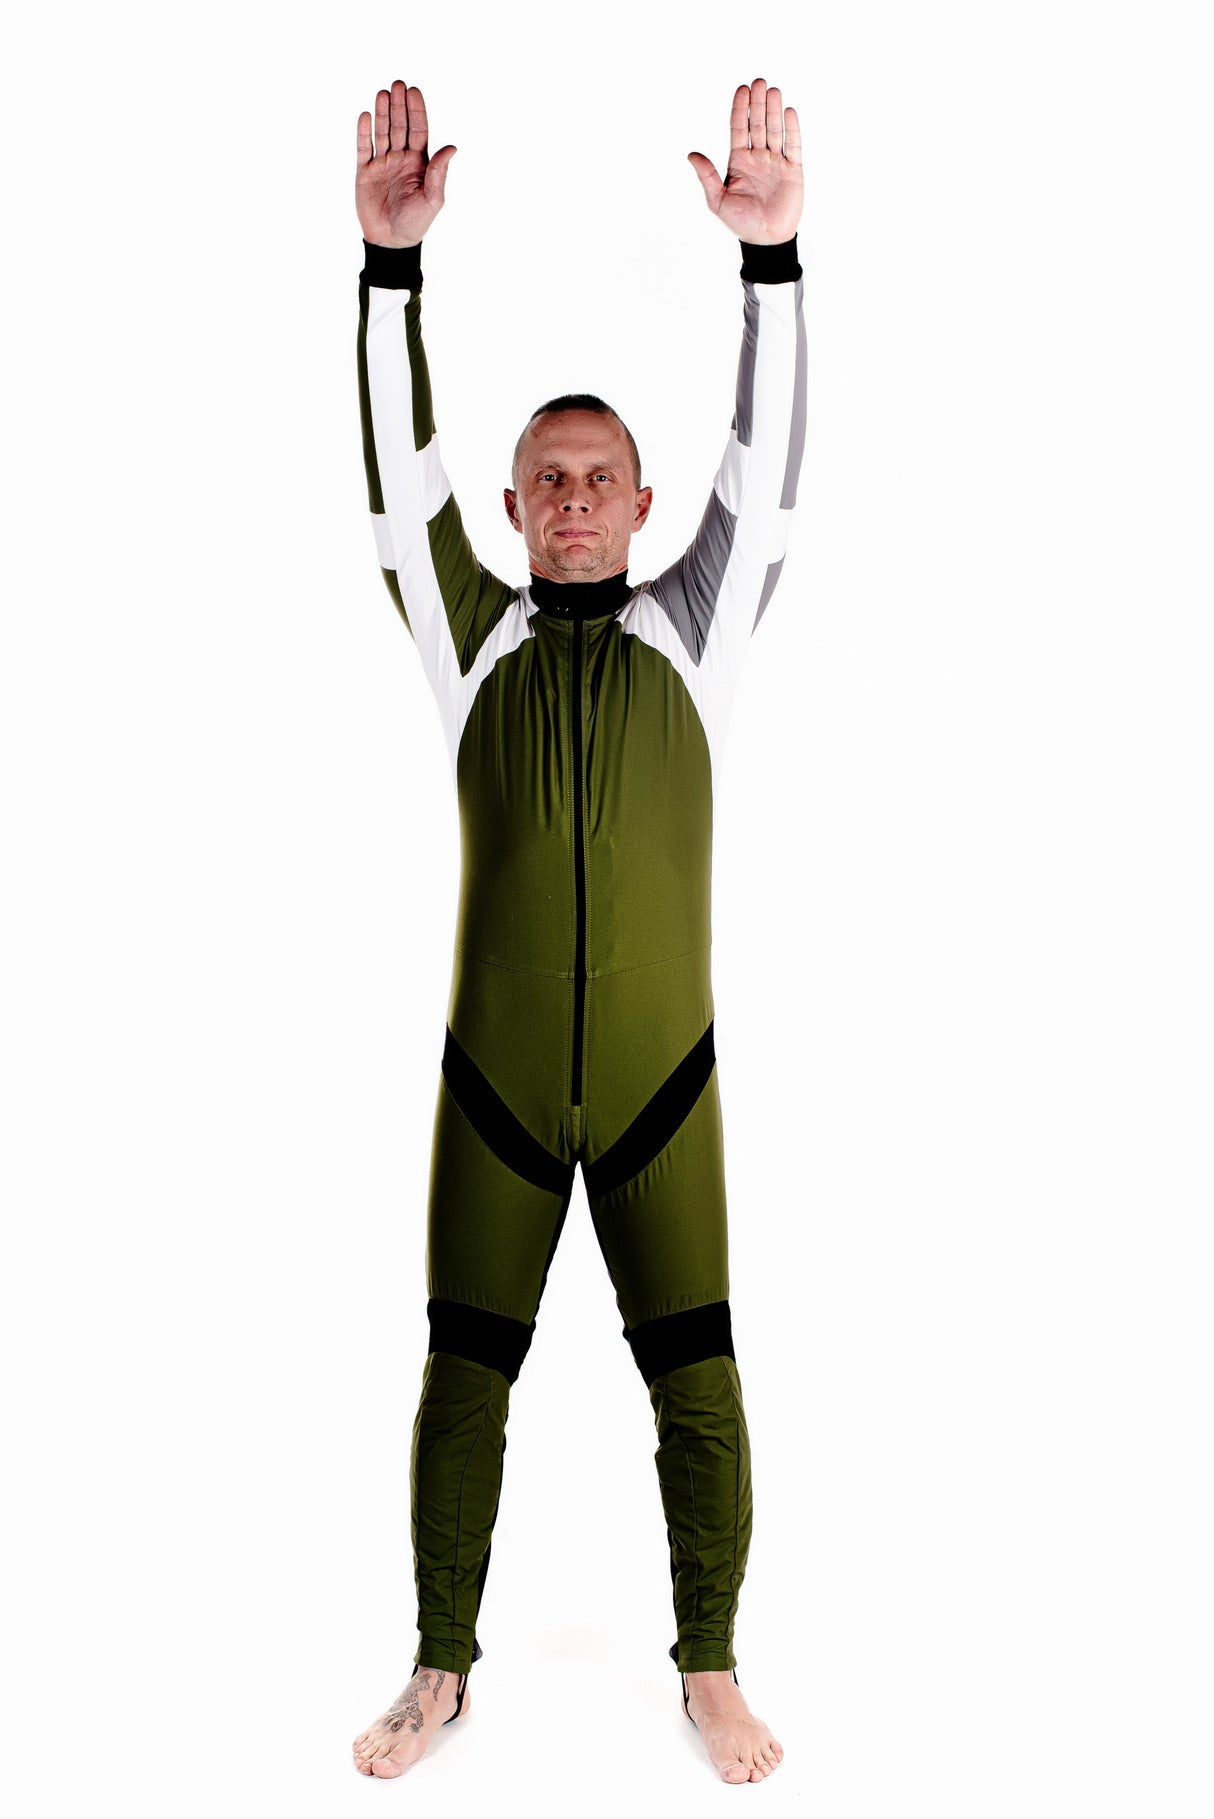 Tonfly Race Suit - SkydiveShop.com